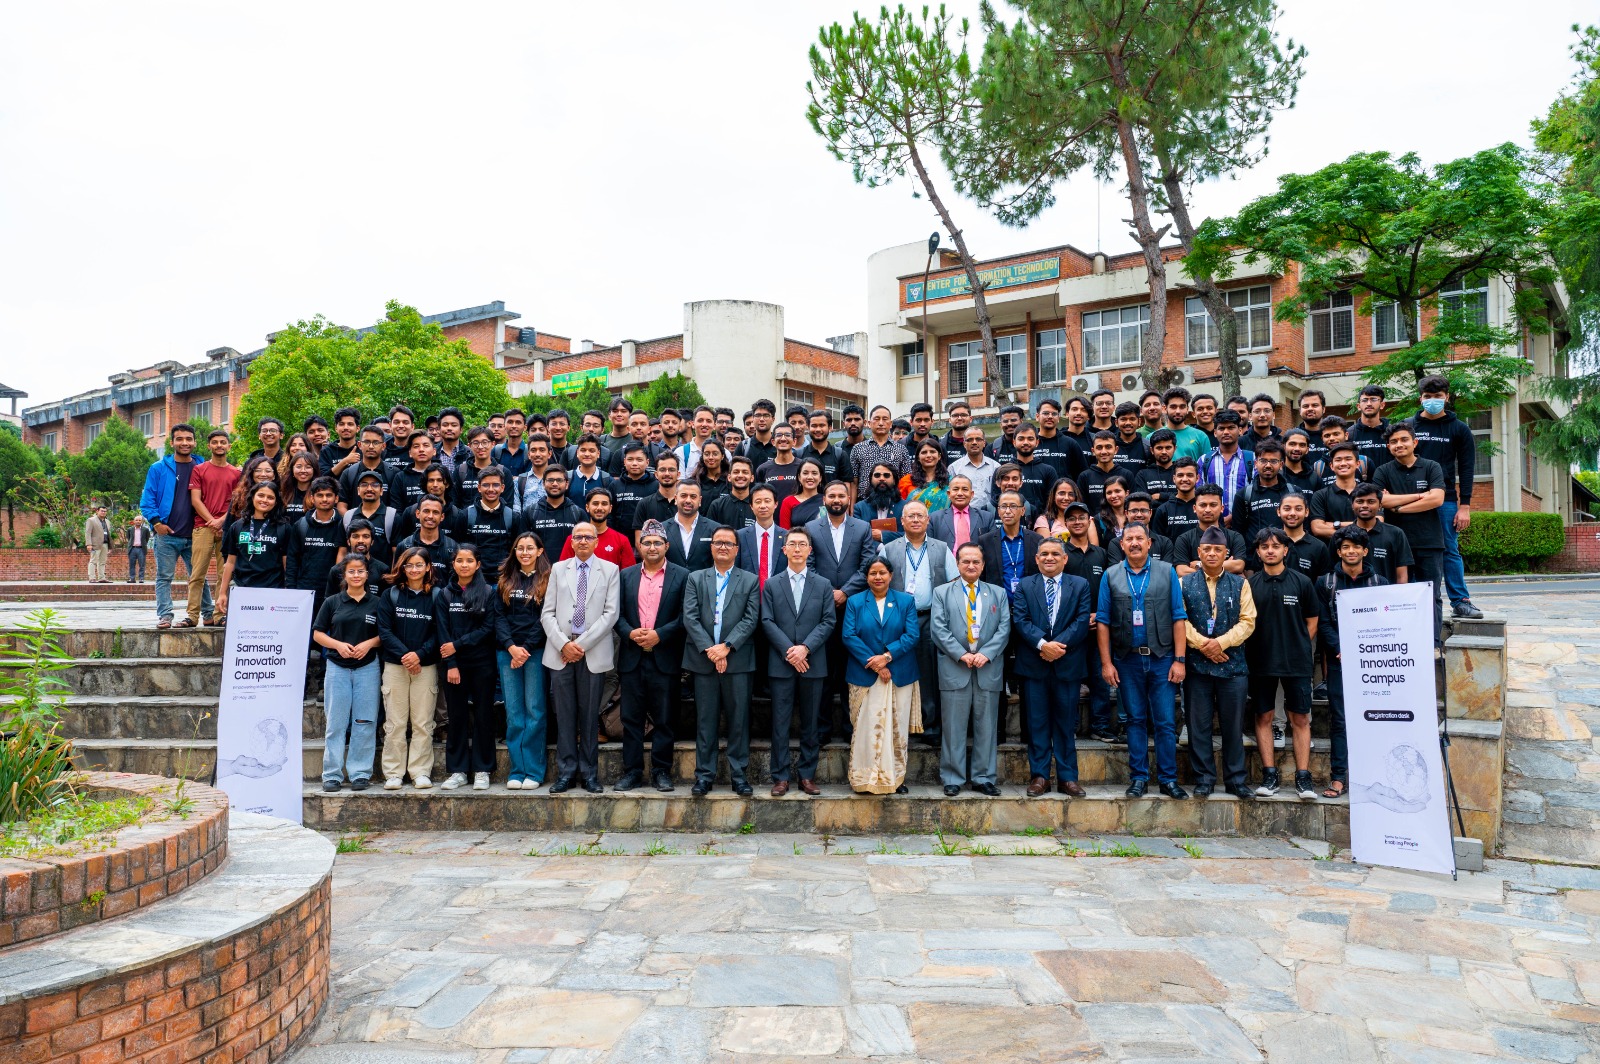 काठमाडौंमा सामसङ इनोभेसन क्याम्पसका विद्यार्थीहरूको पहिलो ब्याचको कोडिङ र प्रोग्रामिङ कोर्स सम्पन्न